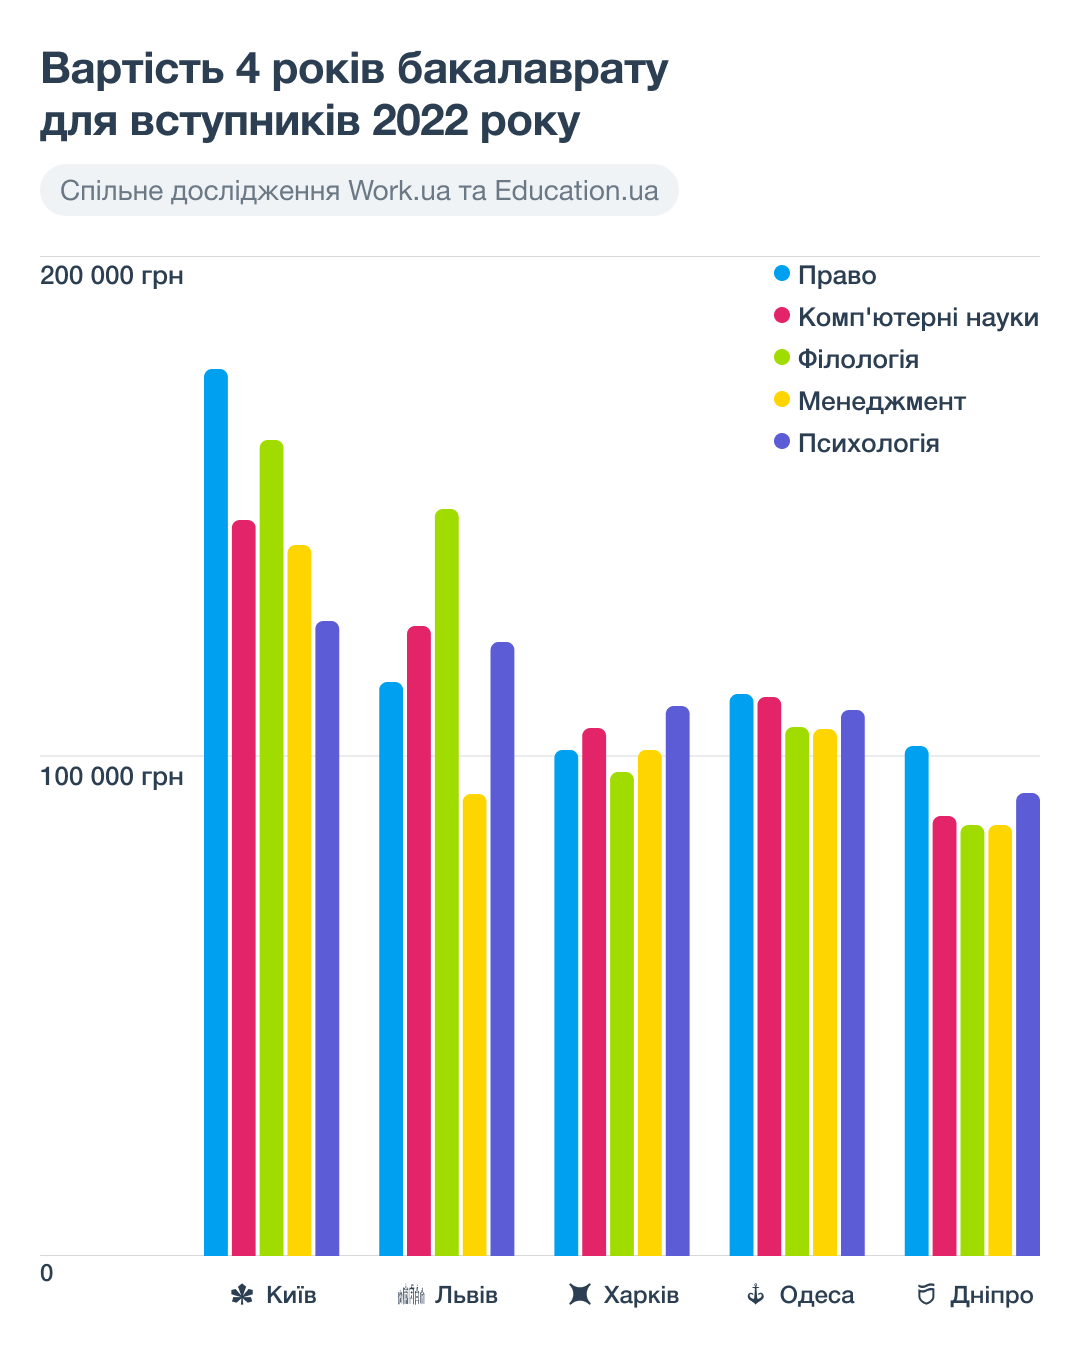 Виклик для освіти. Як війна змінила систему навчання в Україні